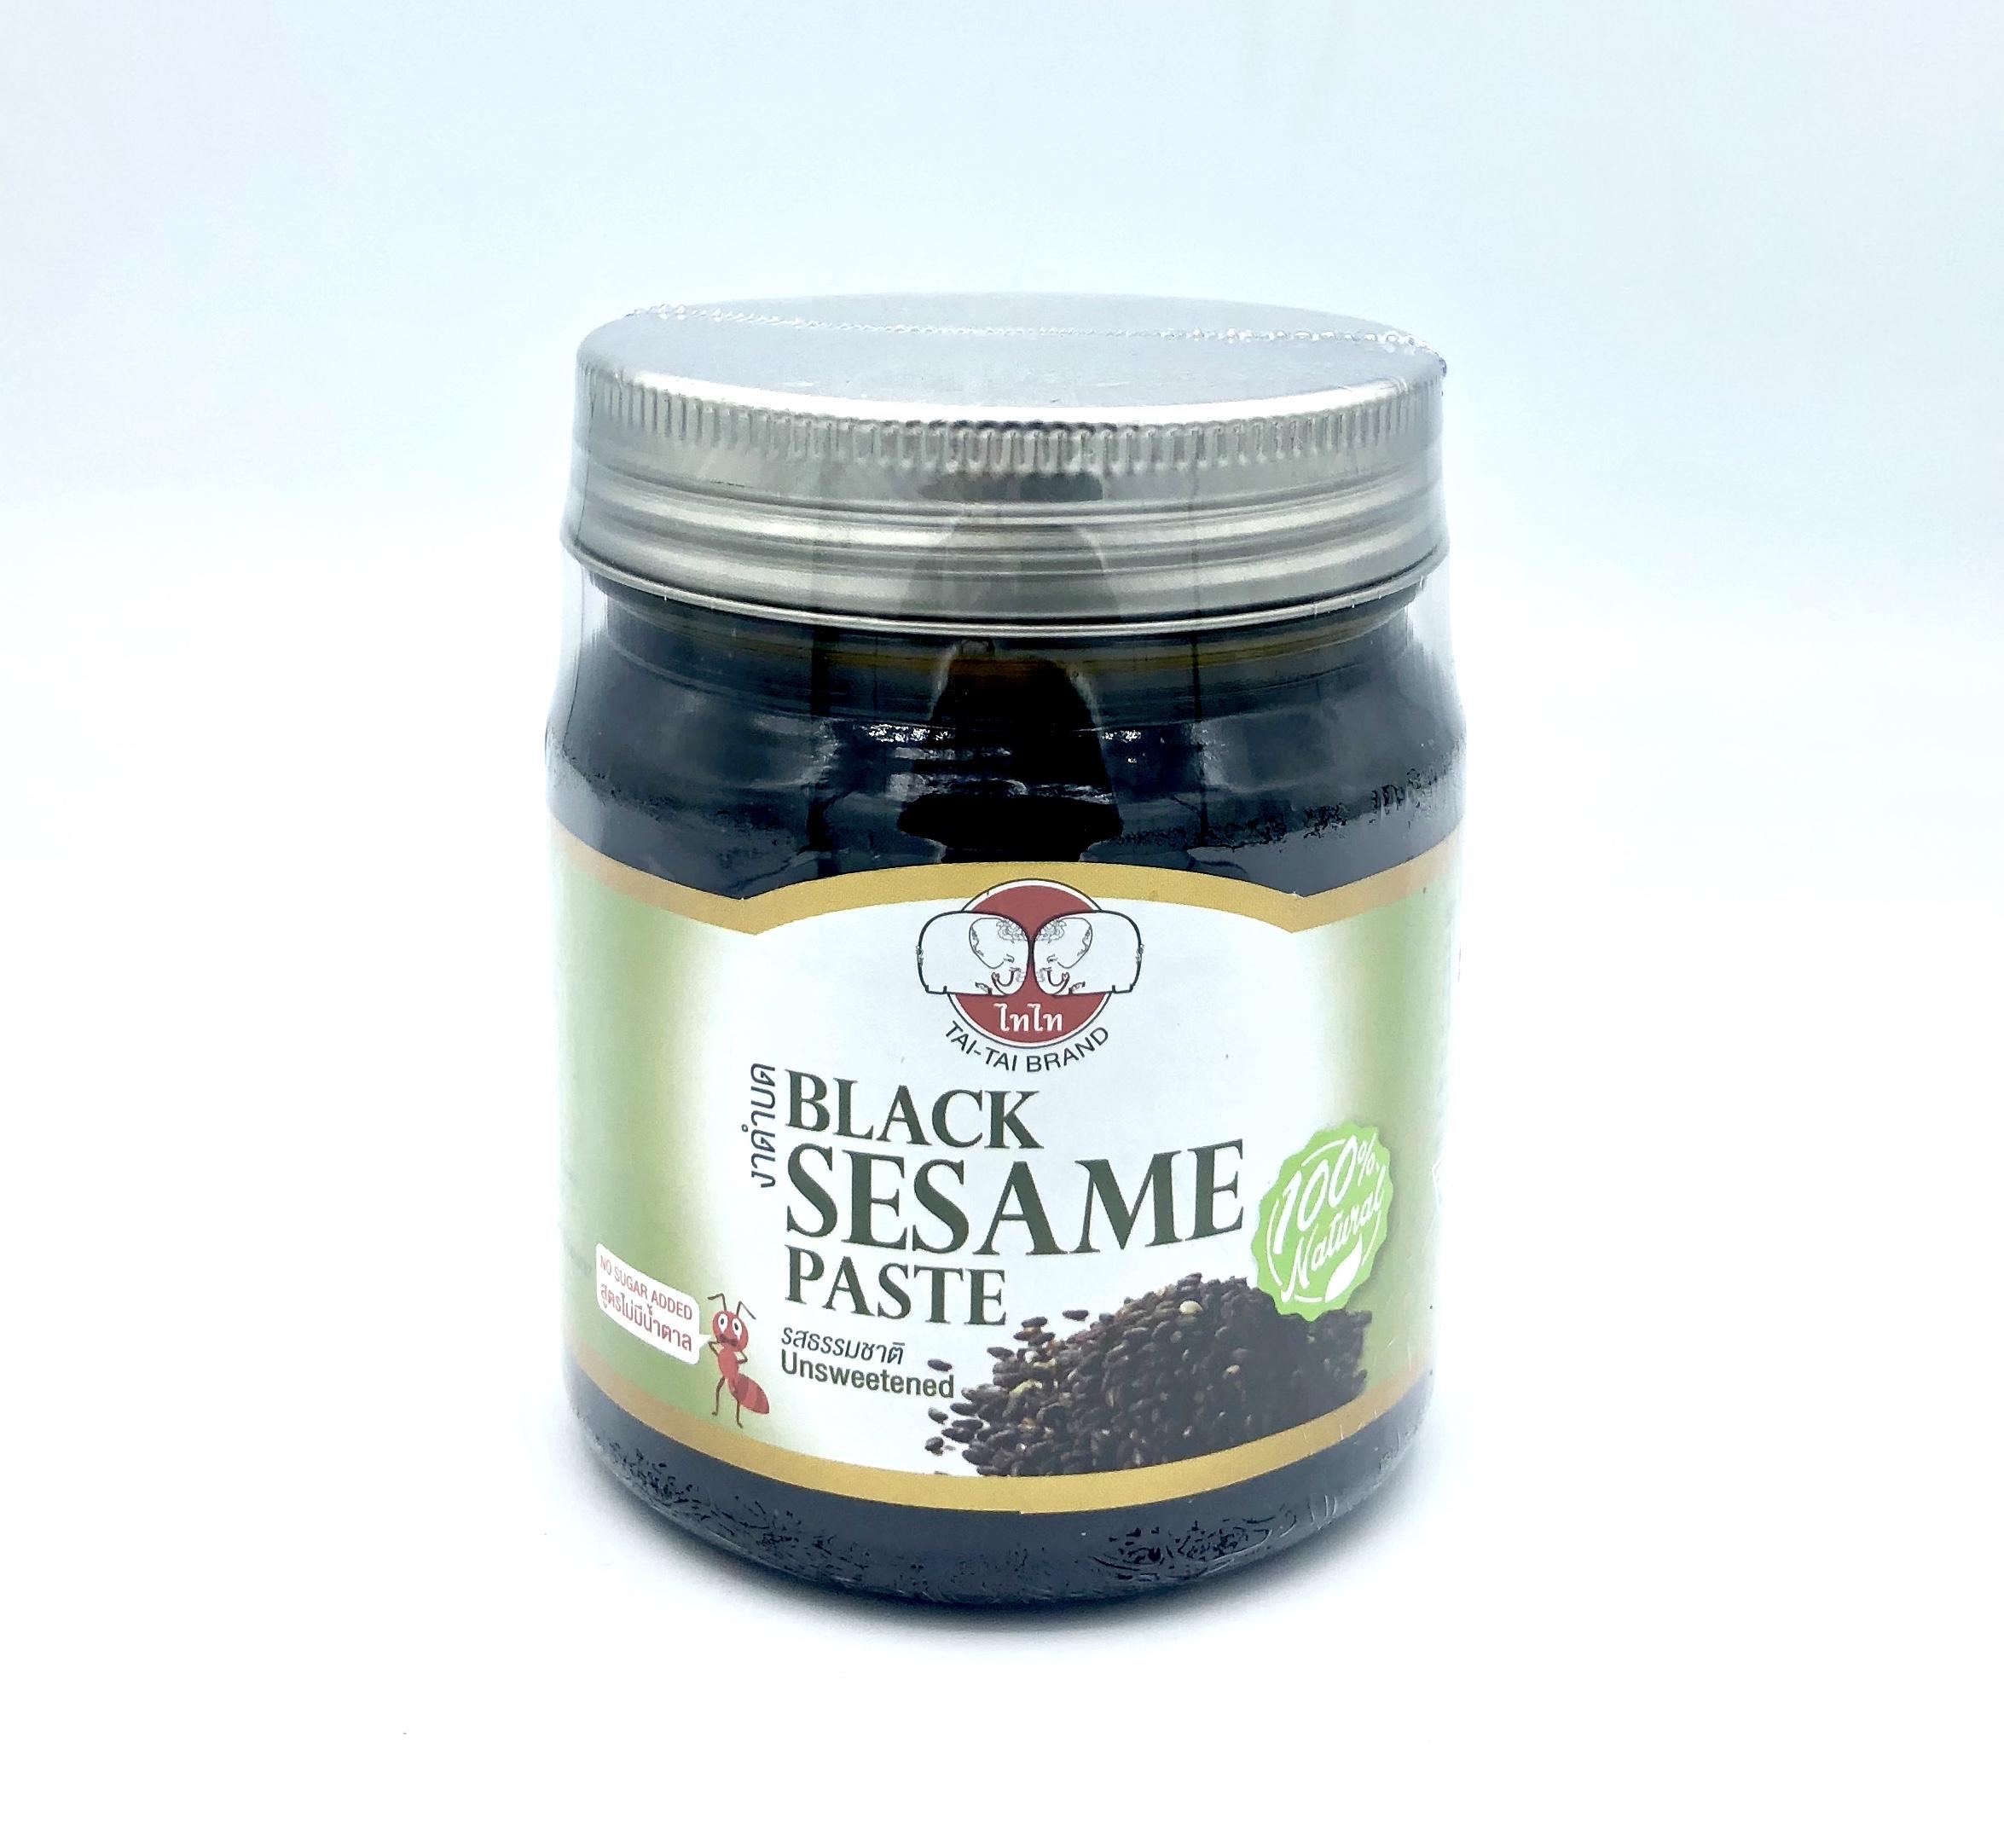 งาดำบด/ครีมงาดำ 100% ตรา ไทไท (Black Sesame Paste ,No sugar added) รสจืด (น้ำตาล 0%) ขนาด 210กรัม